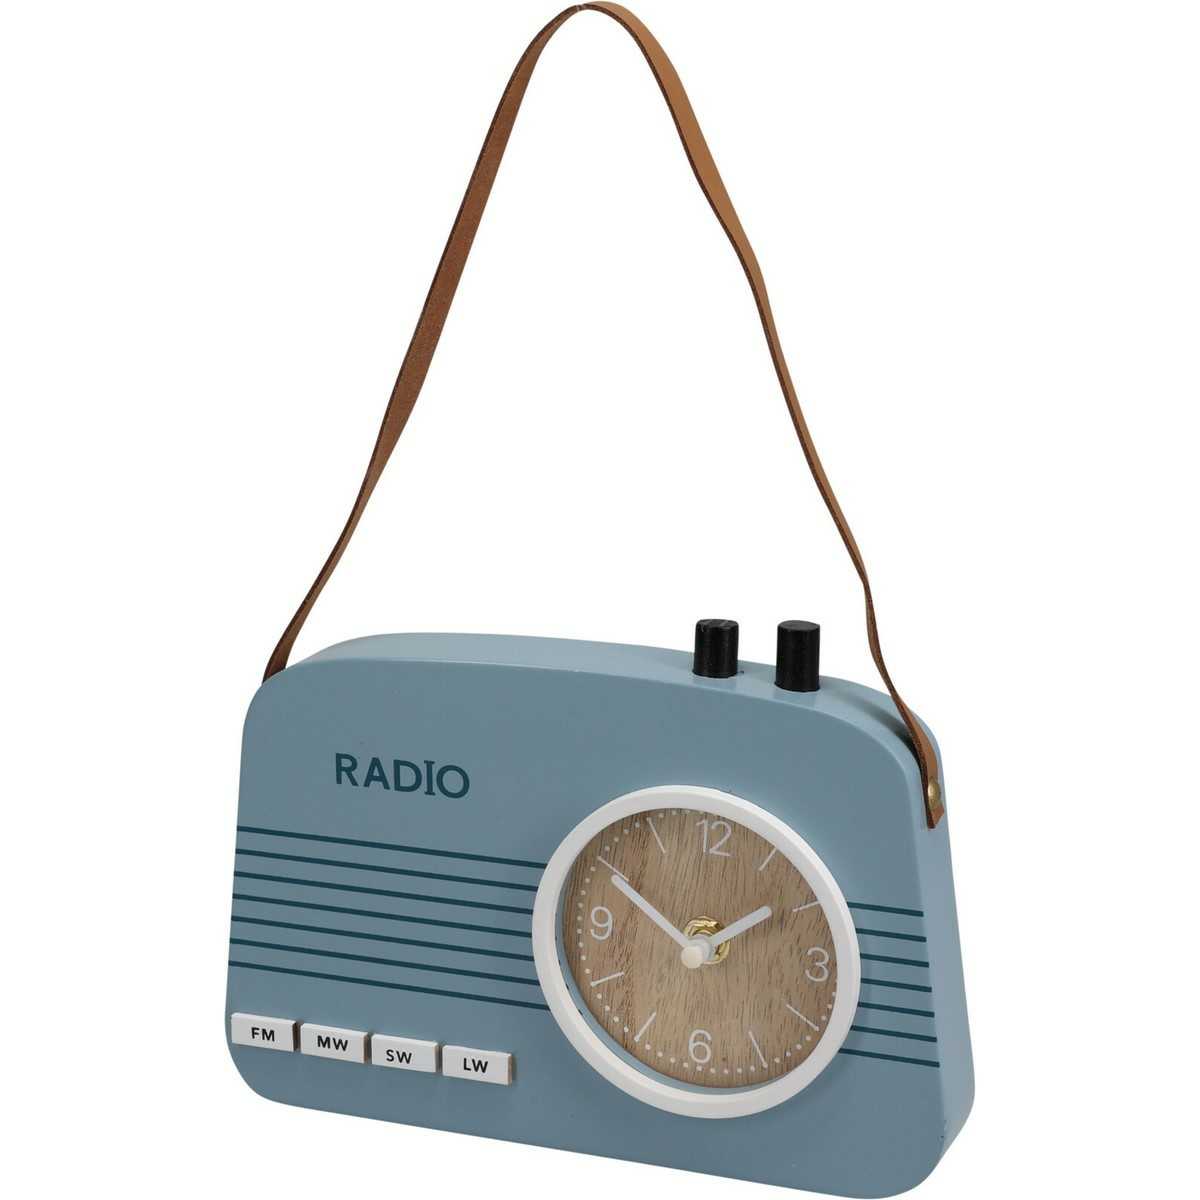 Stolni hodiny Old radio modrá